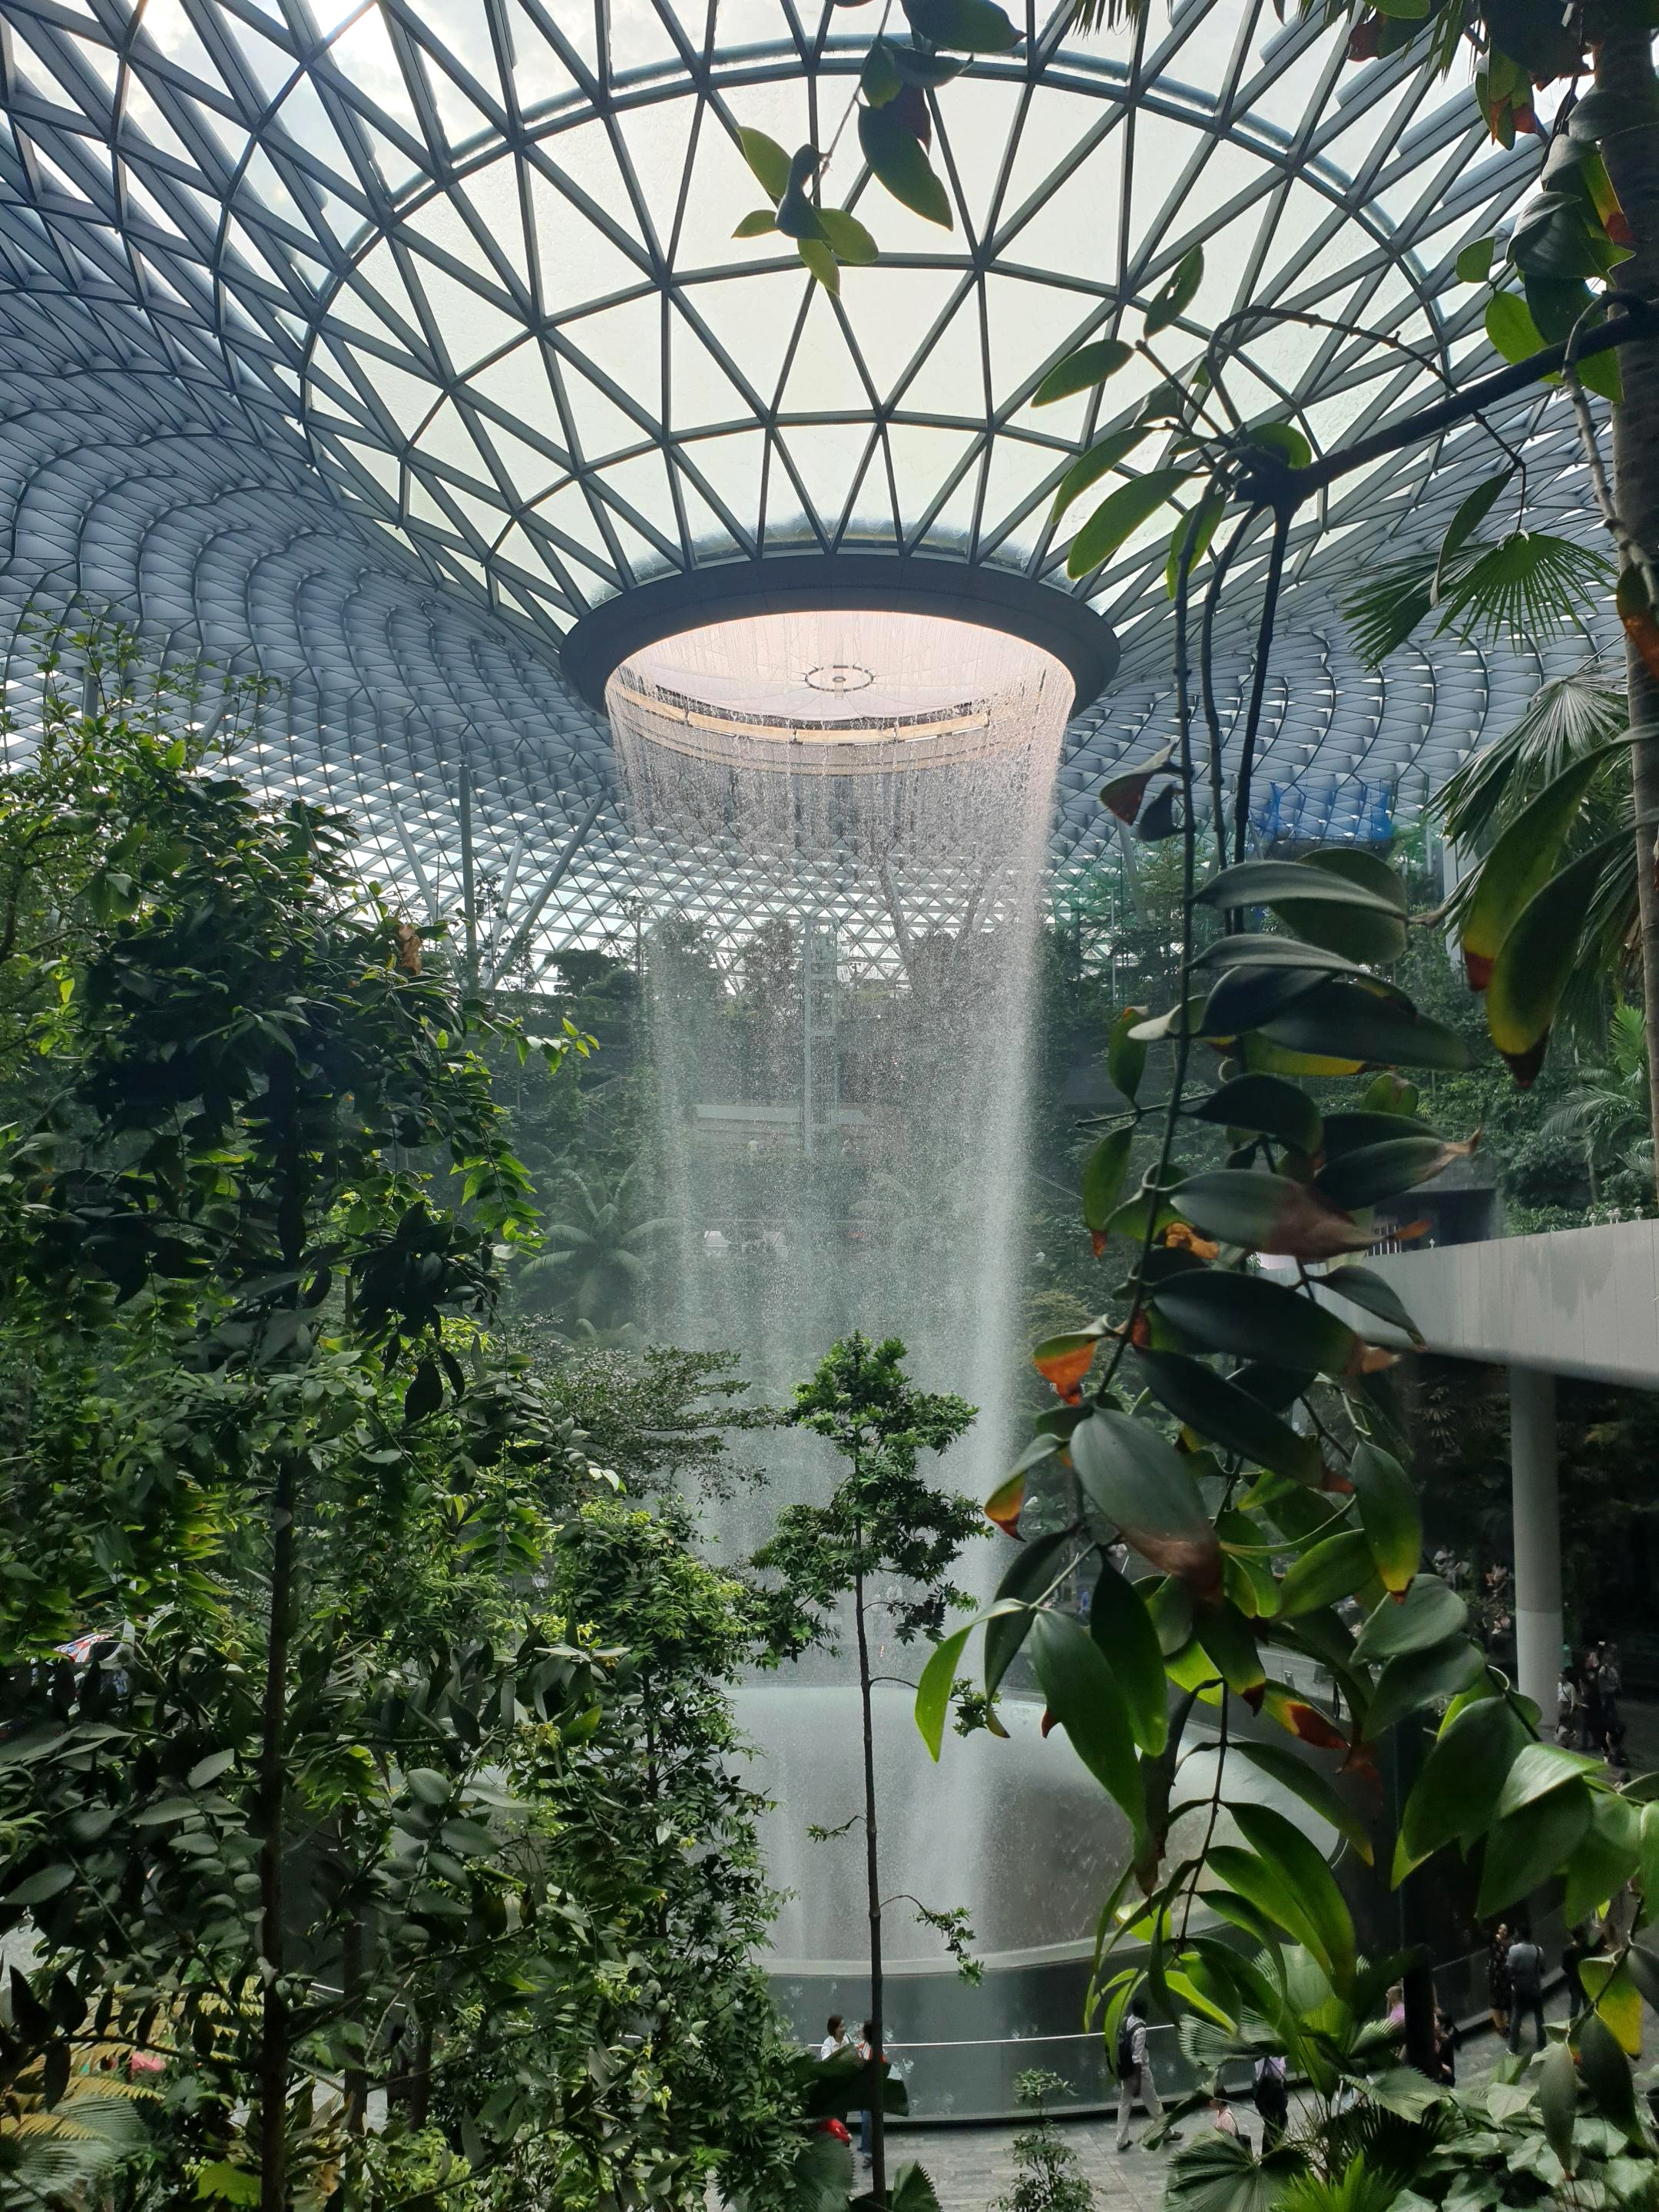 싱가포르 창이 공항 제1터미널에 들어선 쥬얼 창이(Jewel Changi)는 폭포수같이 거대한 물줄기가 유리 돔 천장을 통해 끊임없이 쏟아져 내린다. 공항 전체 배치도를 보면 쥬얼 창이의 위치와 규모를 더 자세히 볼 수 있다.